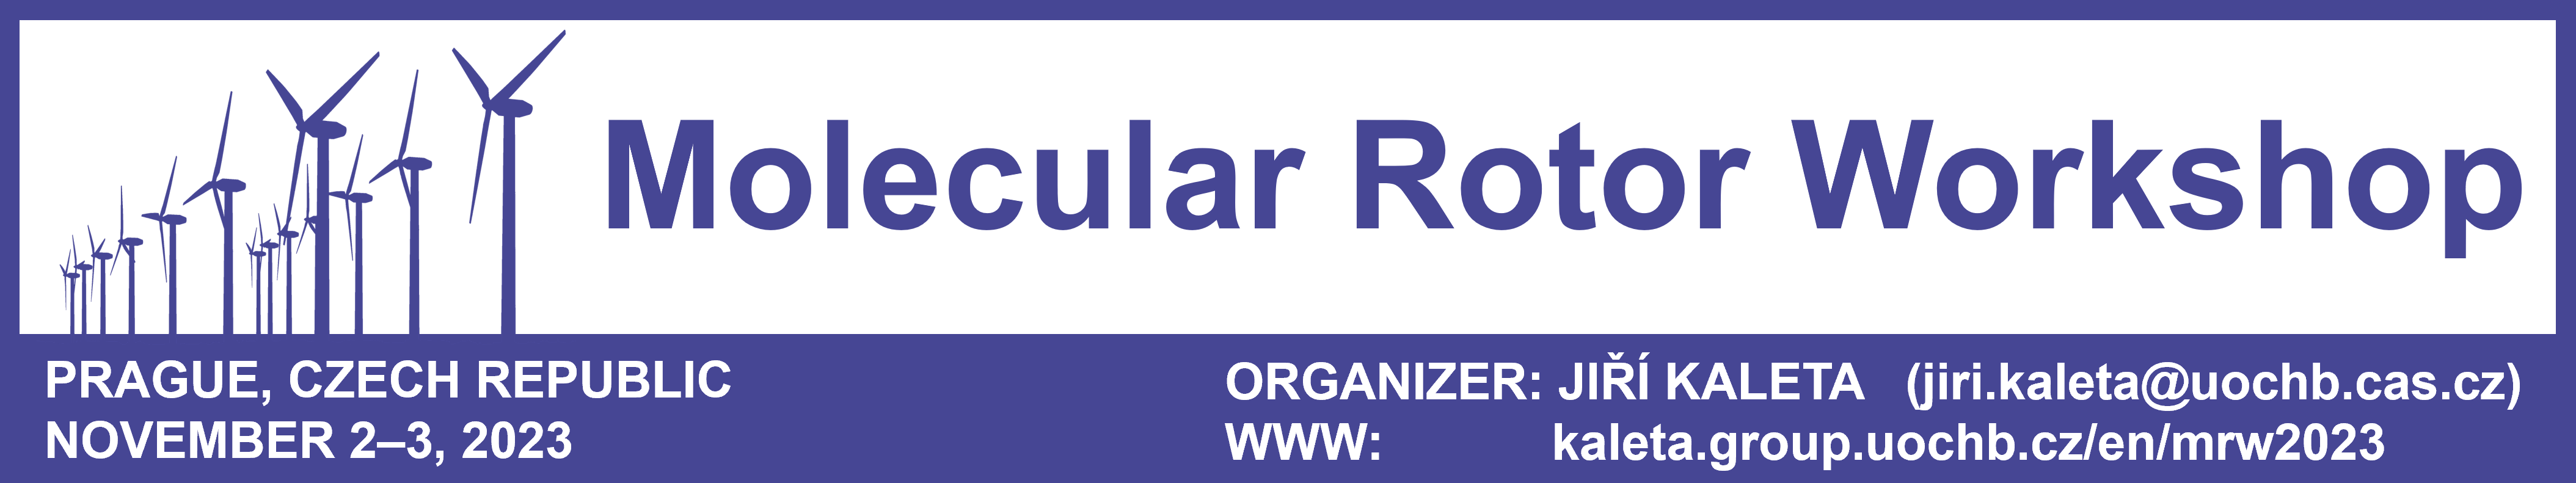 Molecular Rotor Workshop 2023